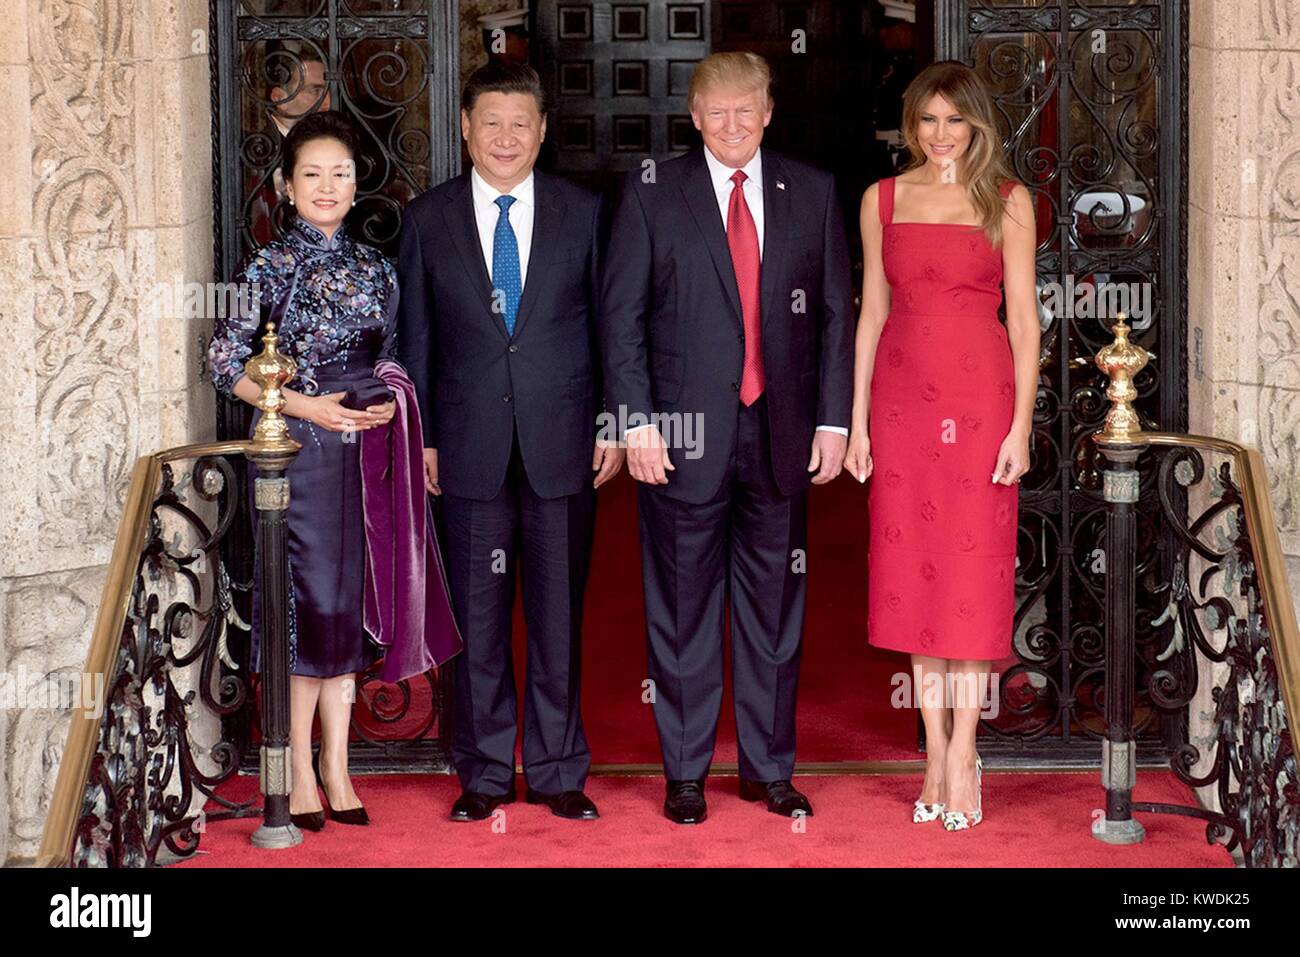 Presidenti Donald Trump e Xi Jingping con le loro mogli, Melania Trump e la Sig.ra Peng Liyuan. Trump e il presidente cinese Xi aveva una due giorni del Vertice che ha incluso la discussione sulla Corea del Nord e del commercio. Il 6 aprile 2017, essi sono stati fotografati all'ingresso del Mar-a-Lago in Palm Beach, Florida (BSLOC 2017 18 161) Foto Stock